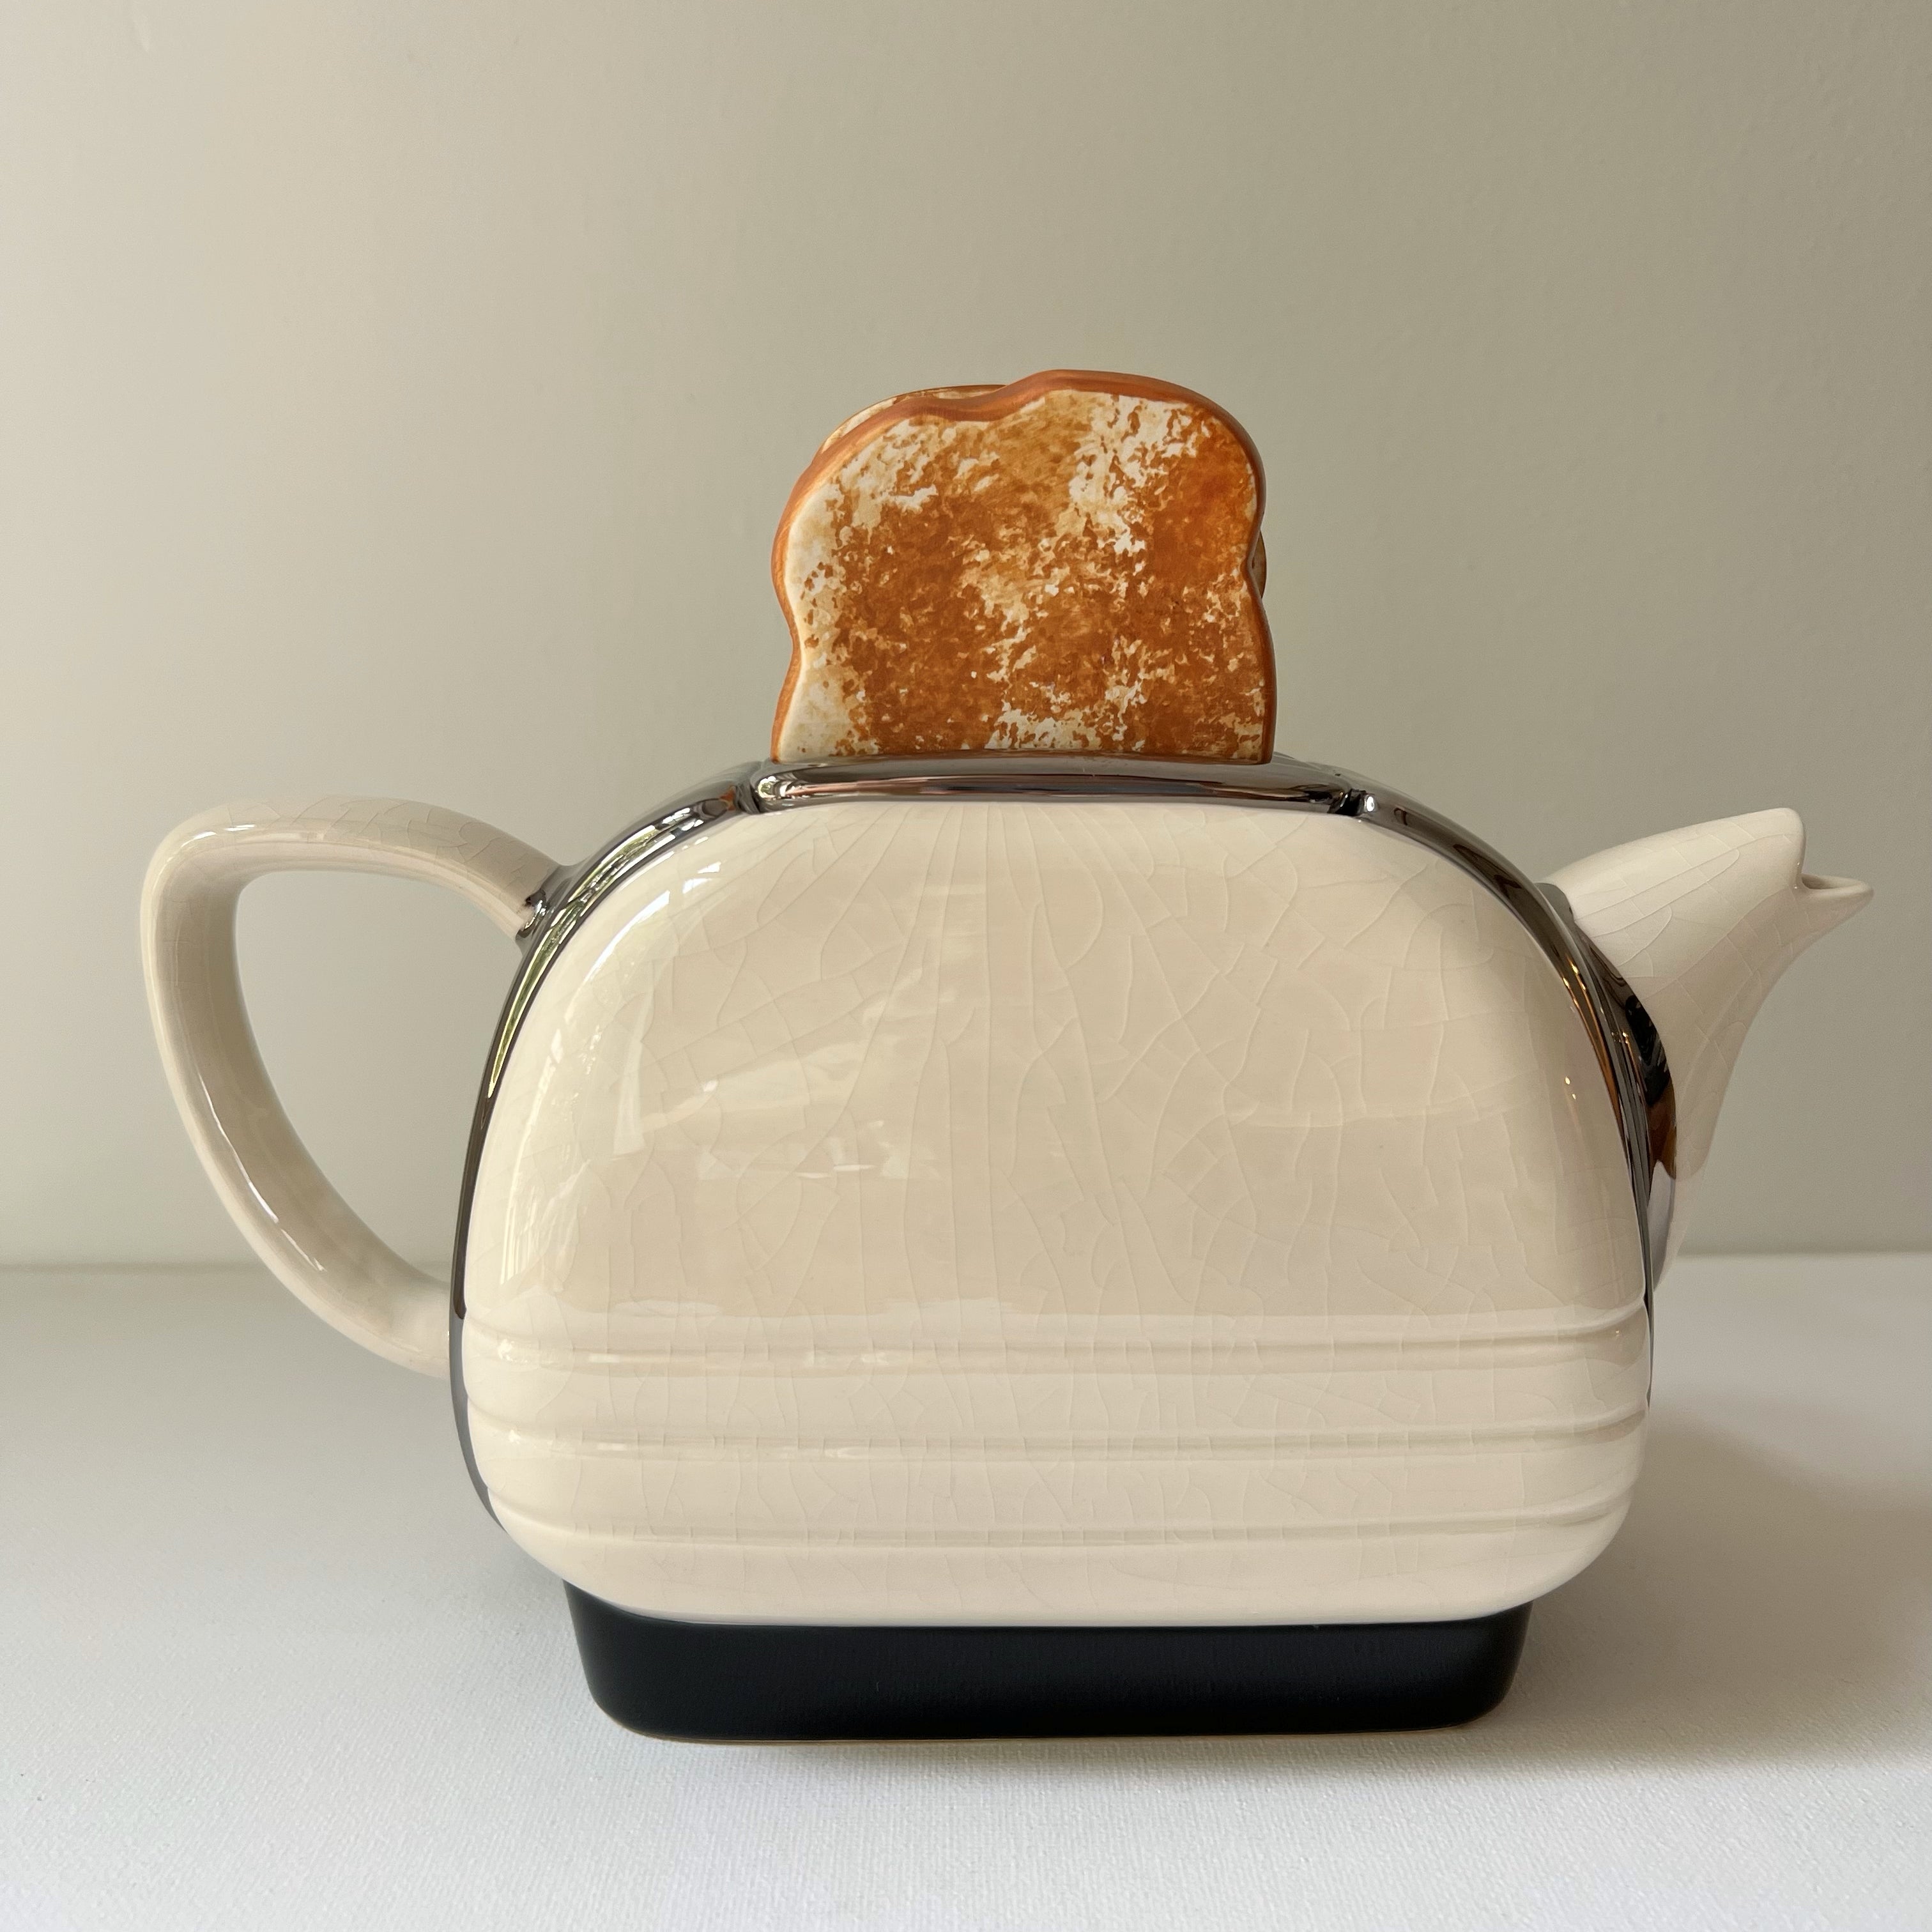 Vintage】England - Teapottery Toaster Teapot ※ヨーロッパ直送 